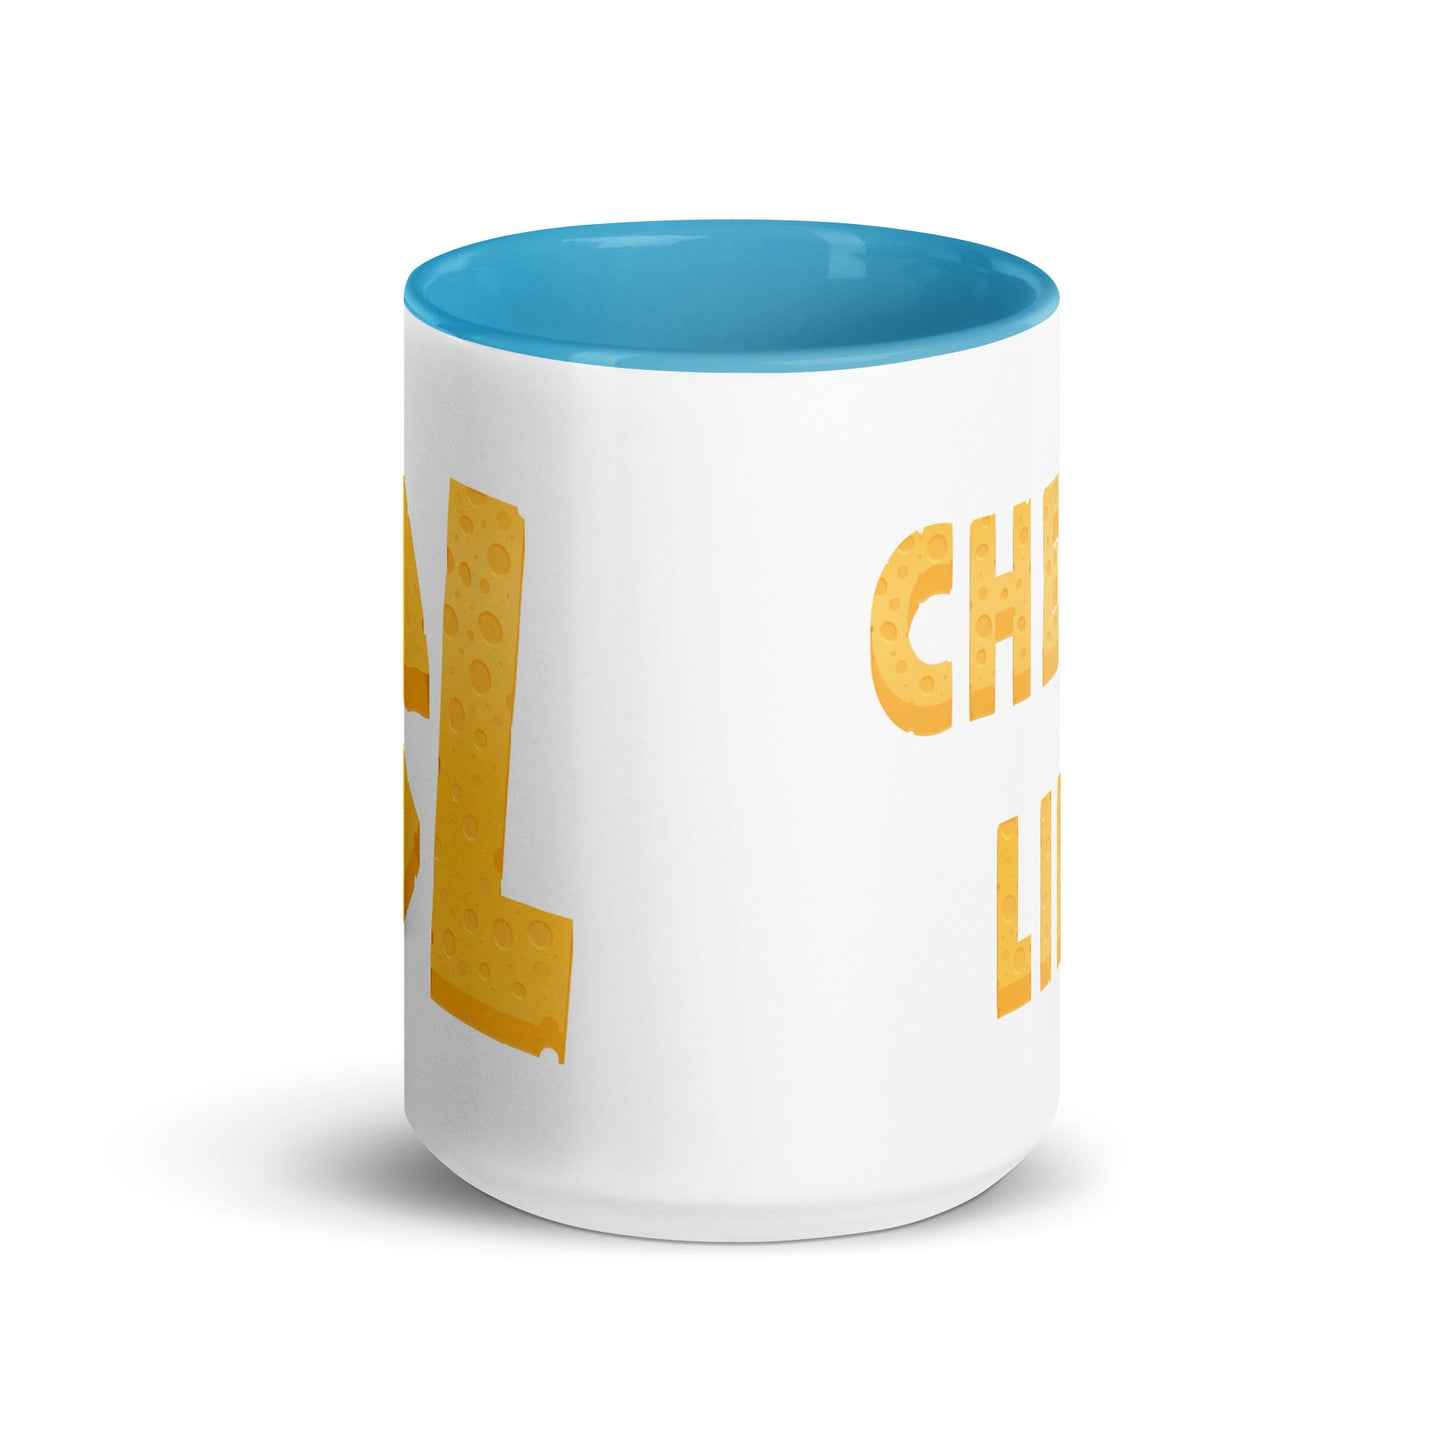 Cheese Life Logo Color Ceramic Mug